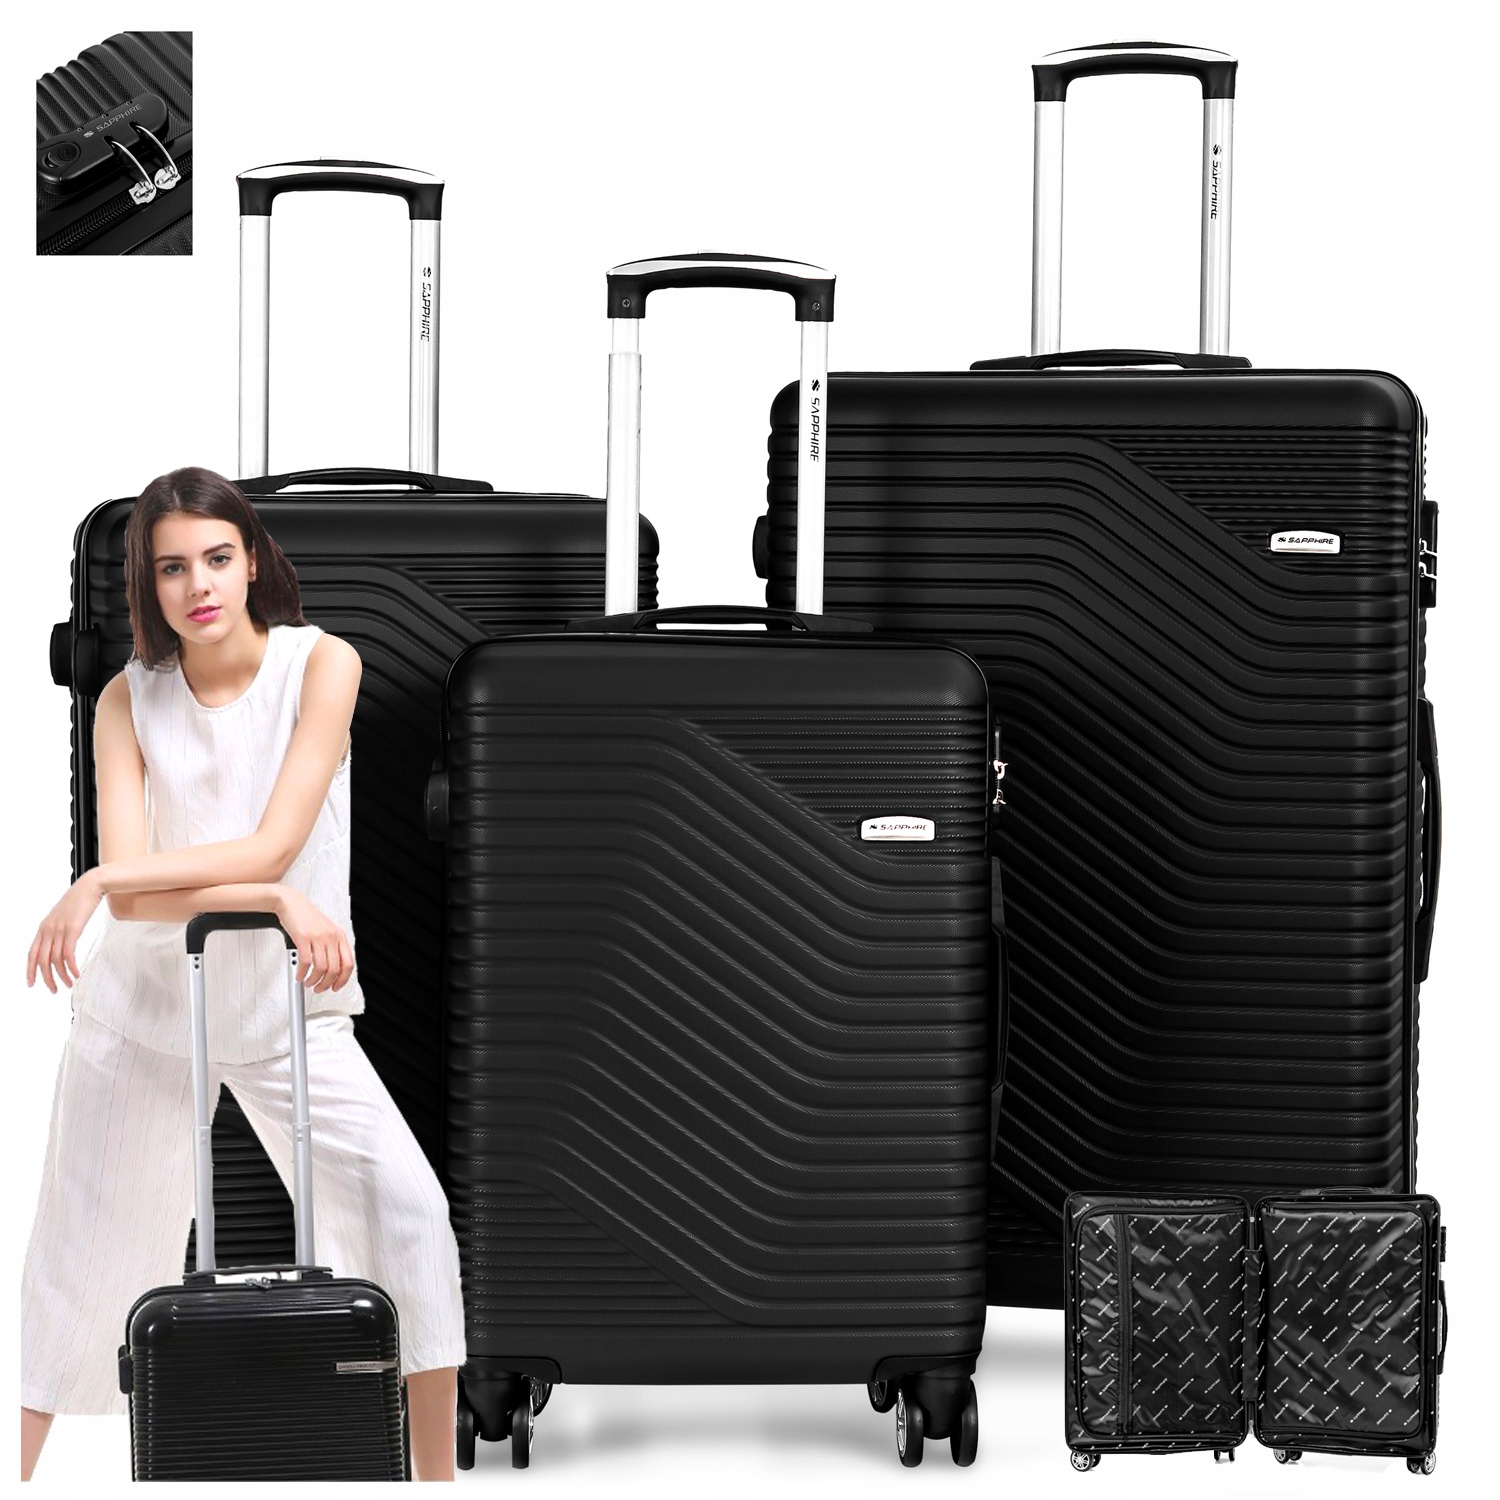 Zestaw walizek podróżnych 3w1 Sapphire ST-140 - czarne DUO